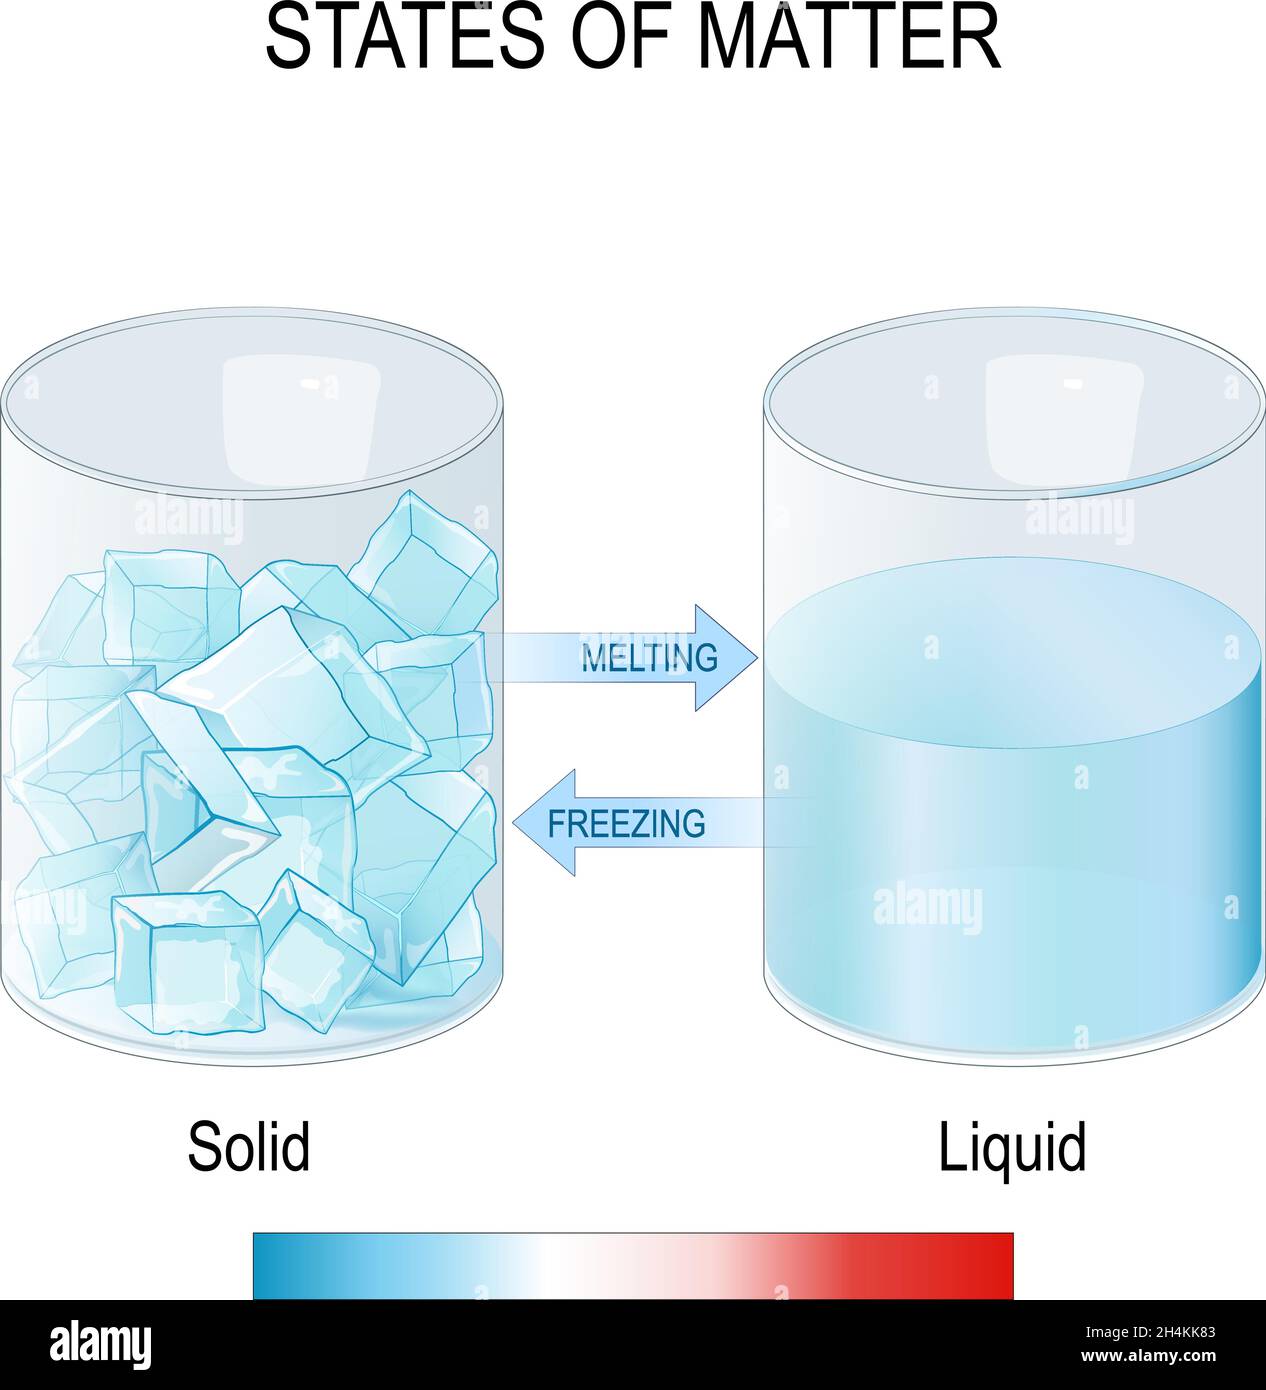 stati della materia. Due bicchieri con cubetti di ghiaccio e acqua. Congelamento e fusione. Liquido e solido. Esperimento scientifico. Studio di fisica o chimica. Illustrazione Vettoriale